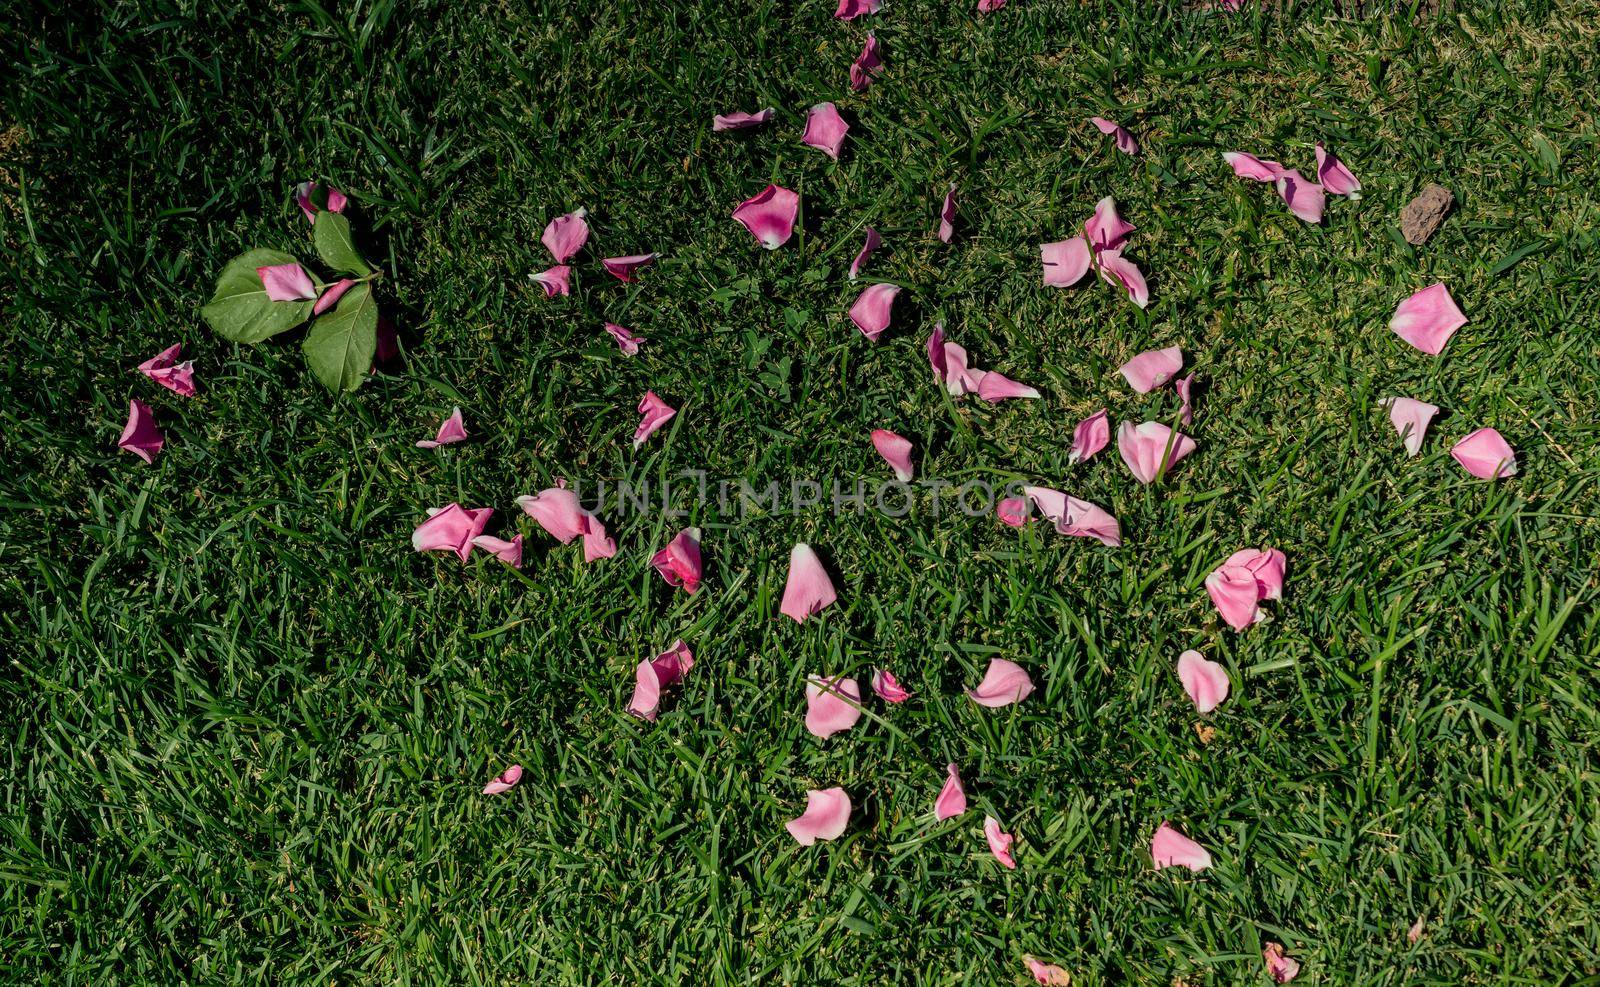 Rose petals representing love and romance by berkay